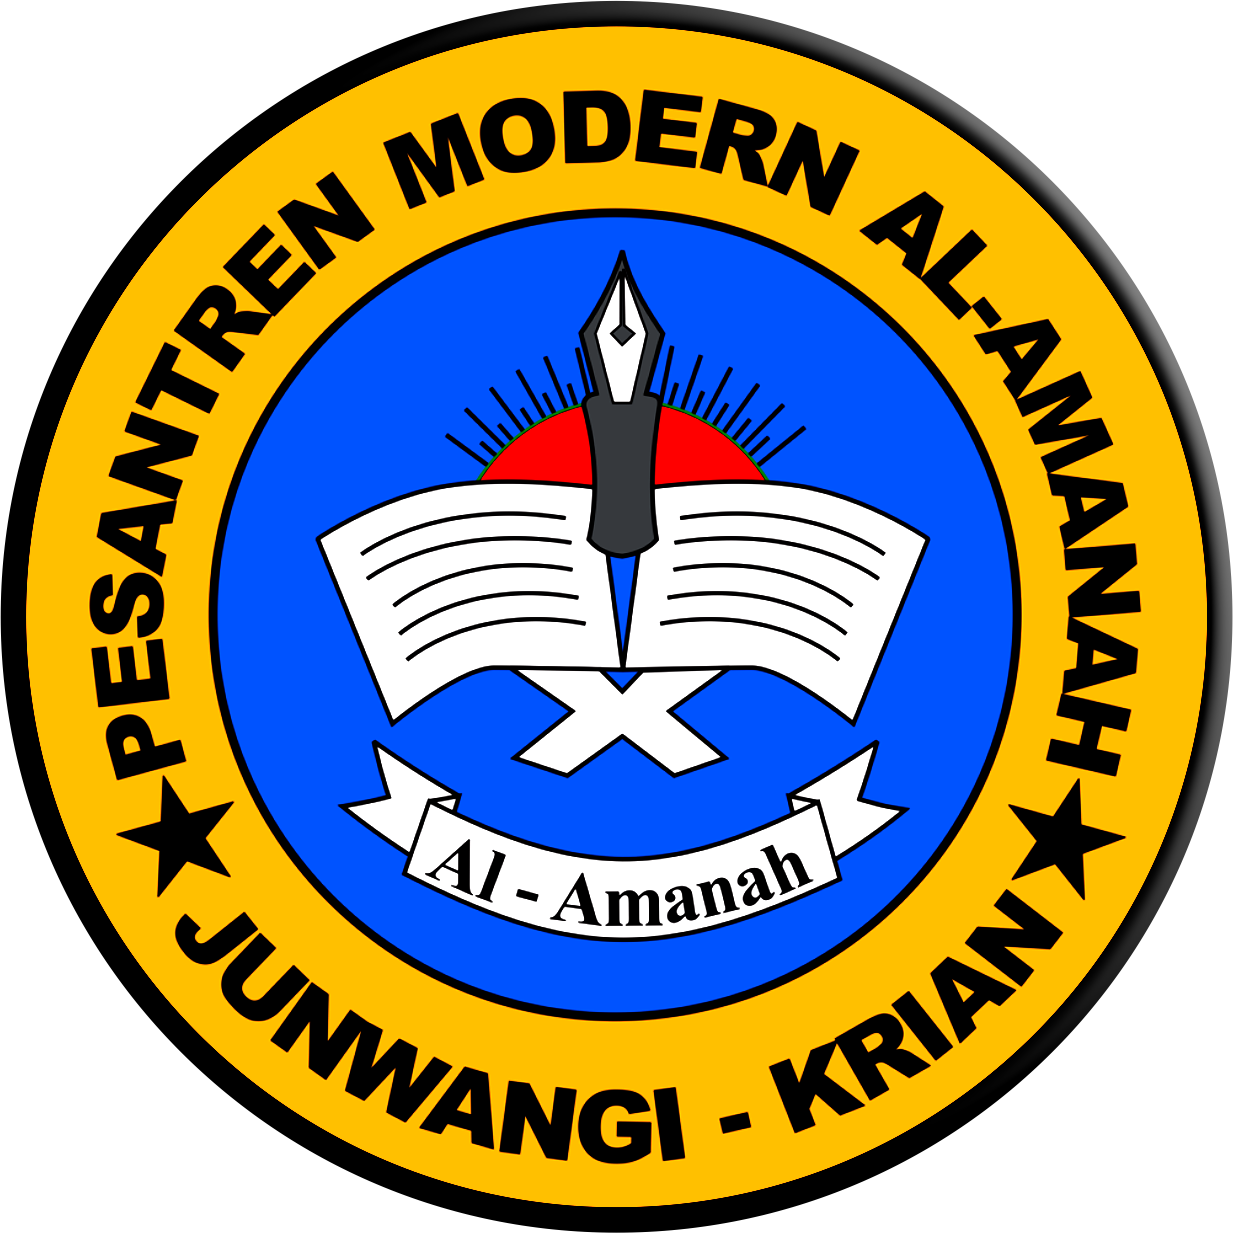 Al-Amanah Press Toko Buku Online